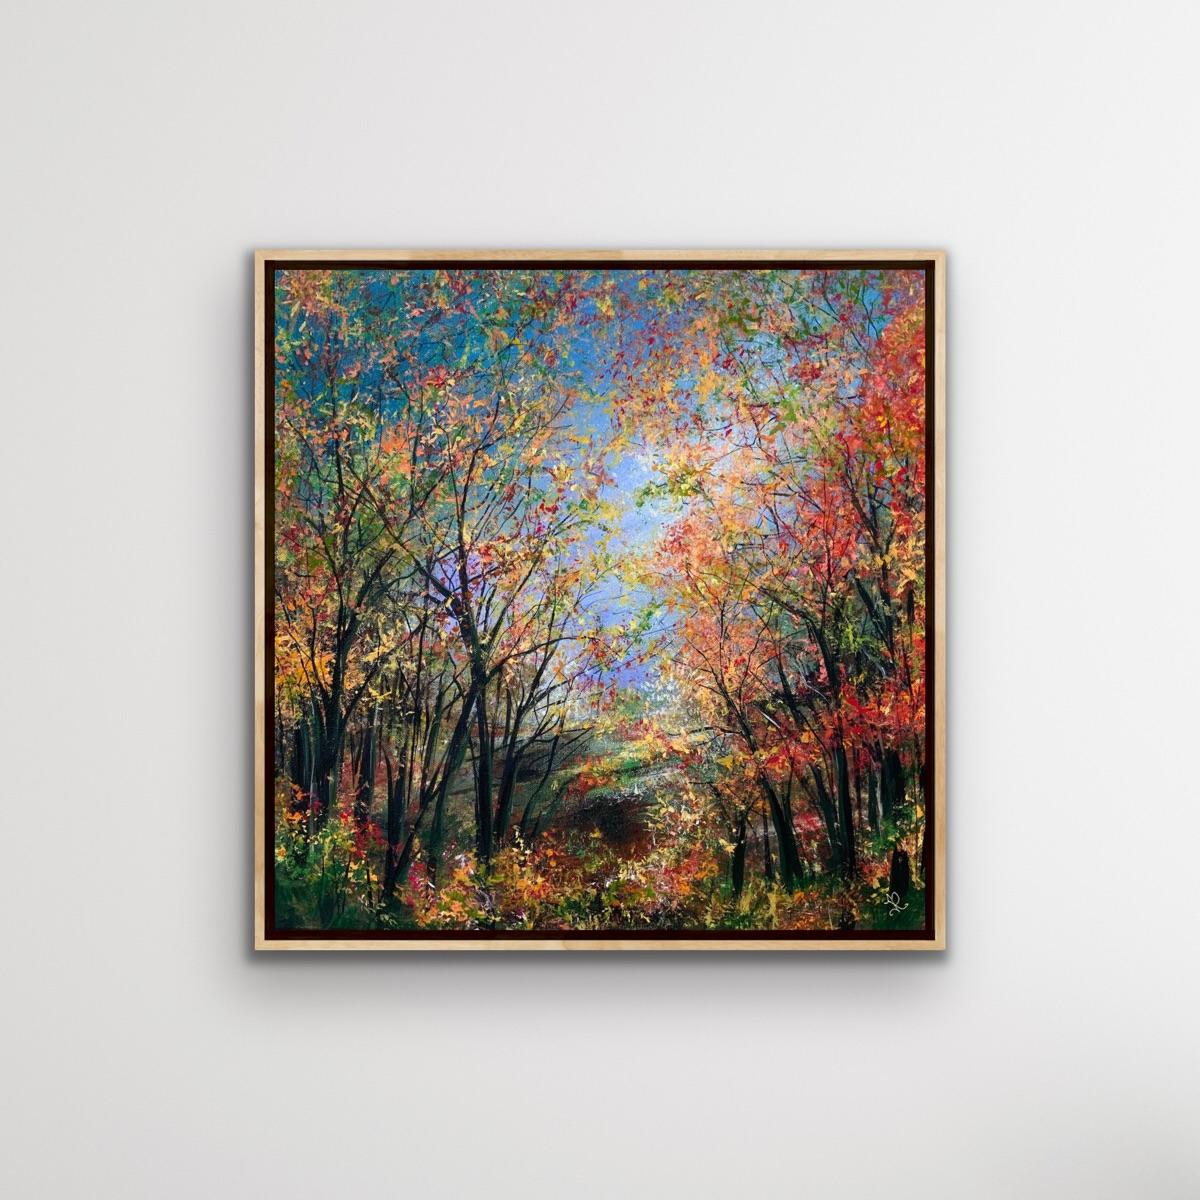 Autumn Blaze Fairy Glen par Jan Rogers, paysage contemporain, art forestier - Contemporain Painting par Jan Rogers 